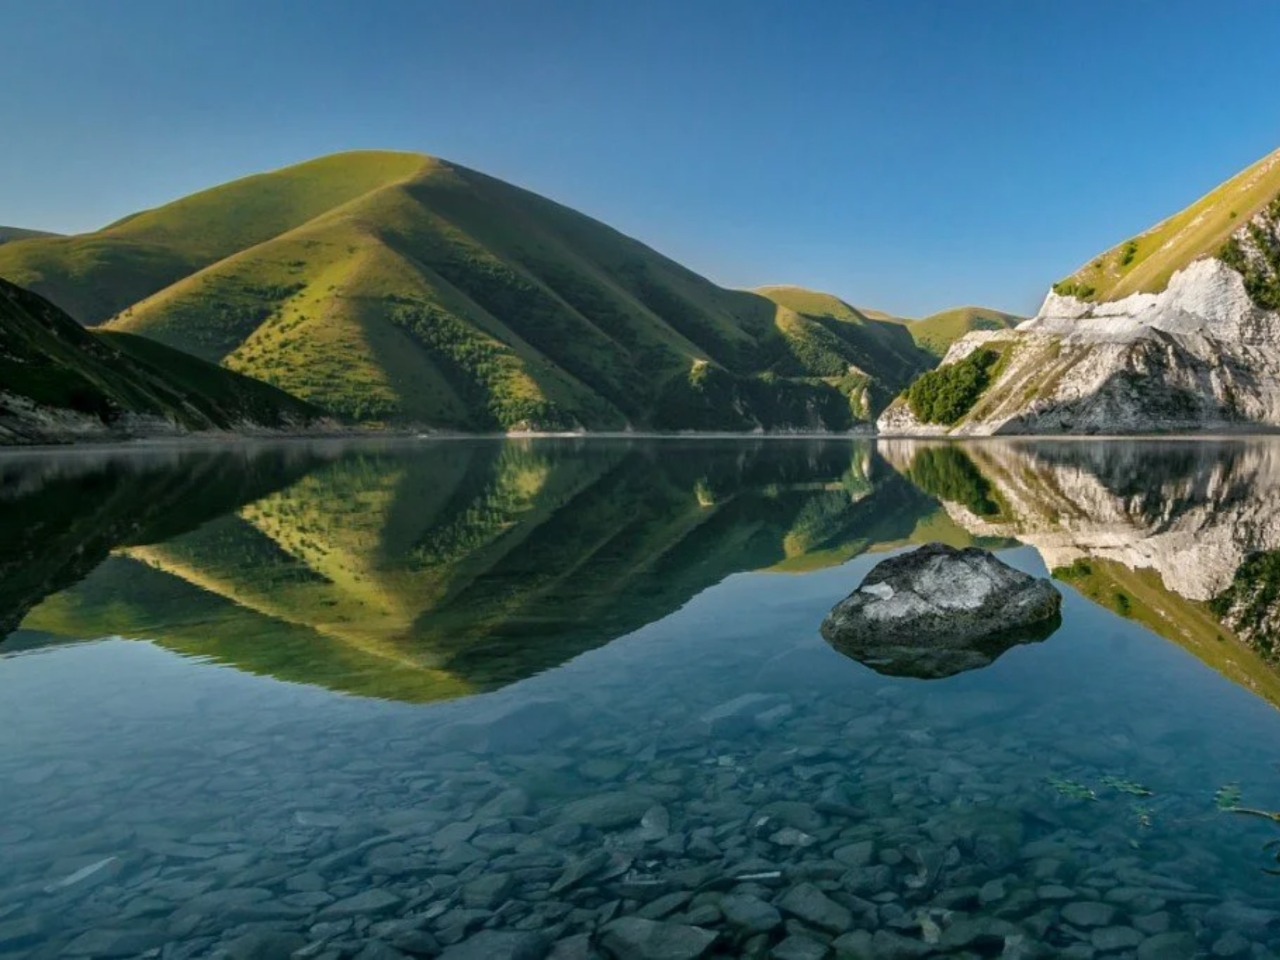 Добро пожаловать в Чечню: озера, водопады, башни! | Цена 20300₽, отзывы, описание экскурсии